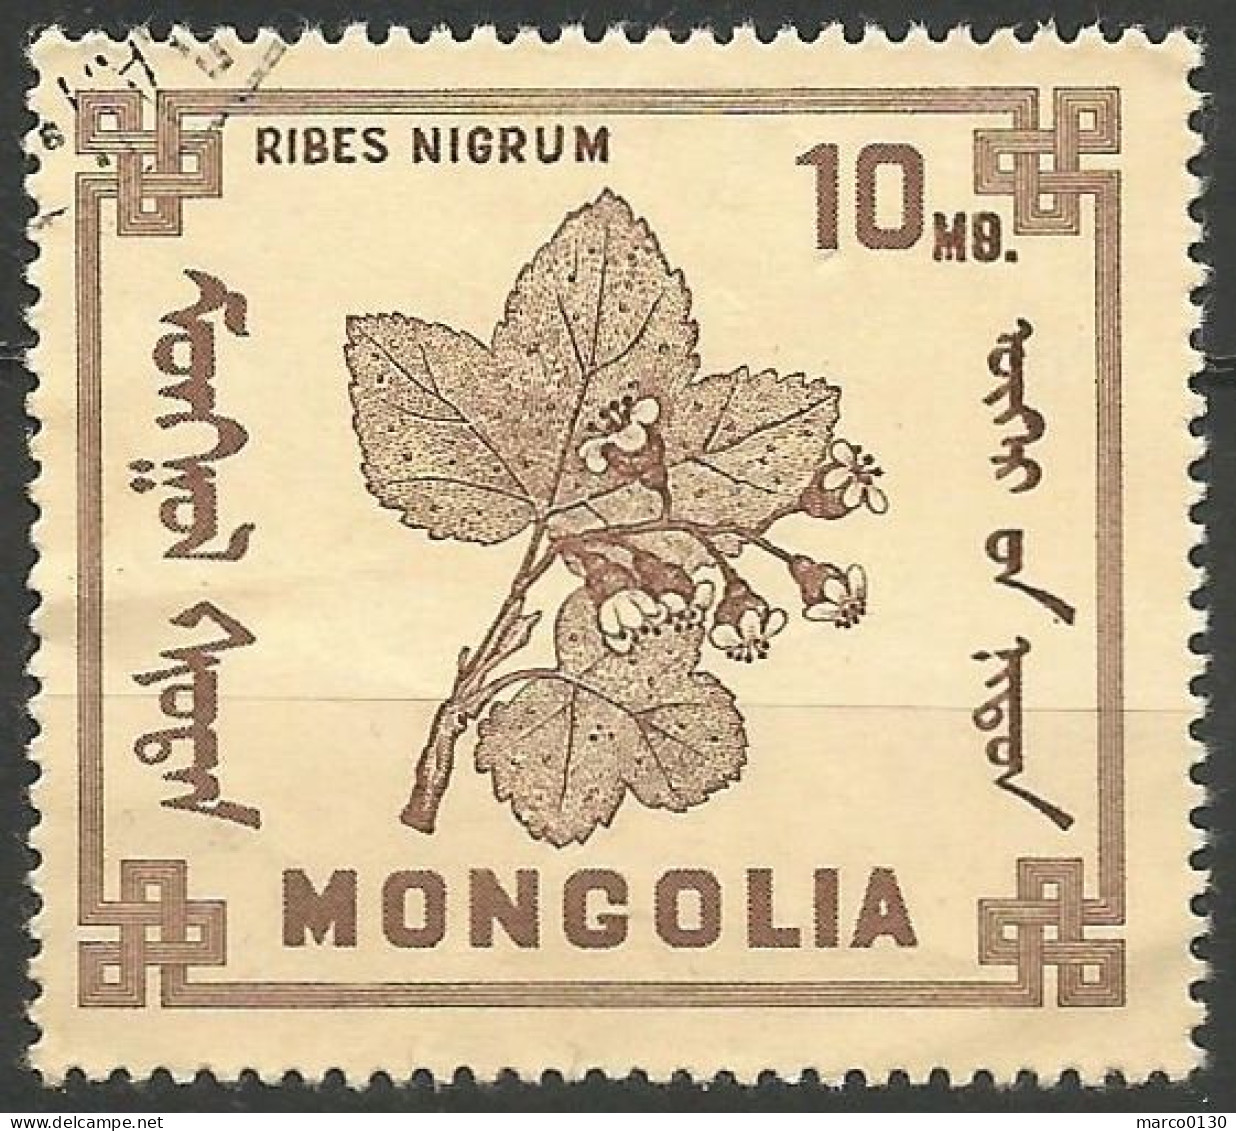 MONGOLIE N° 435 OBLITERE - Mongolia